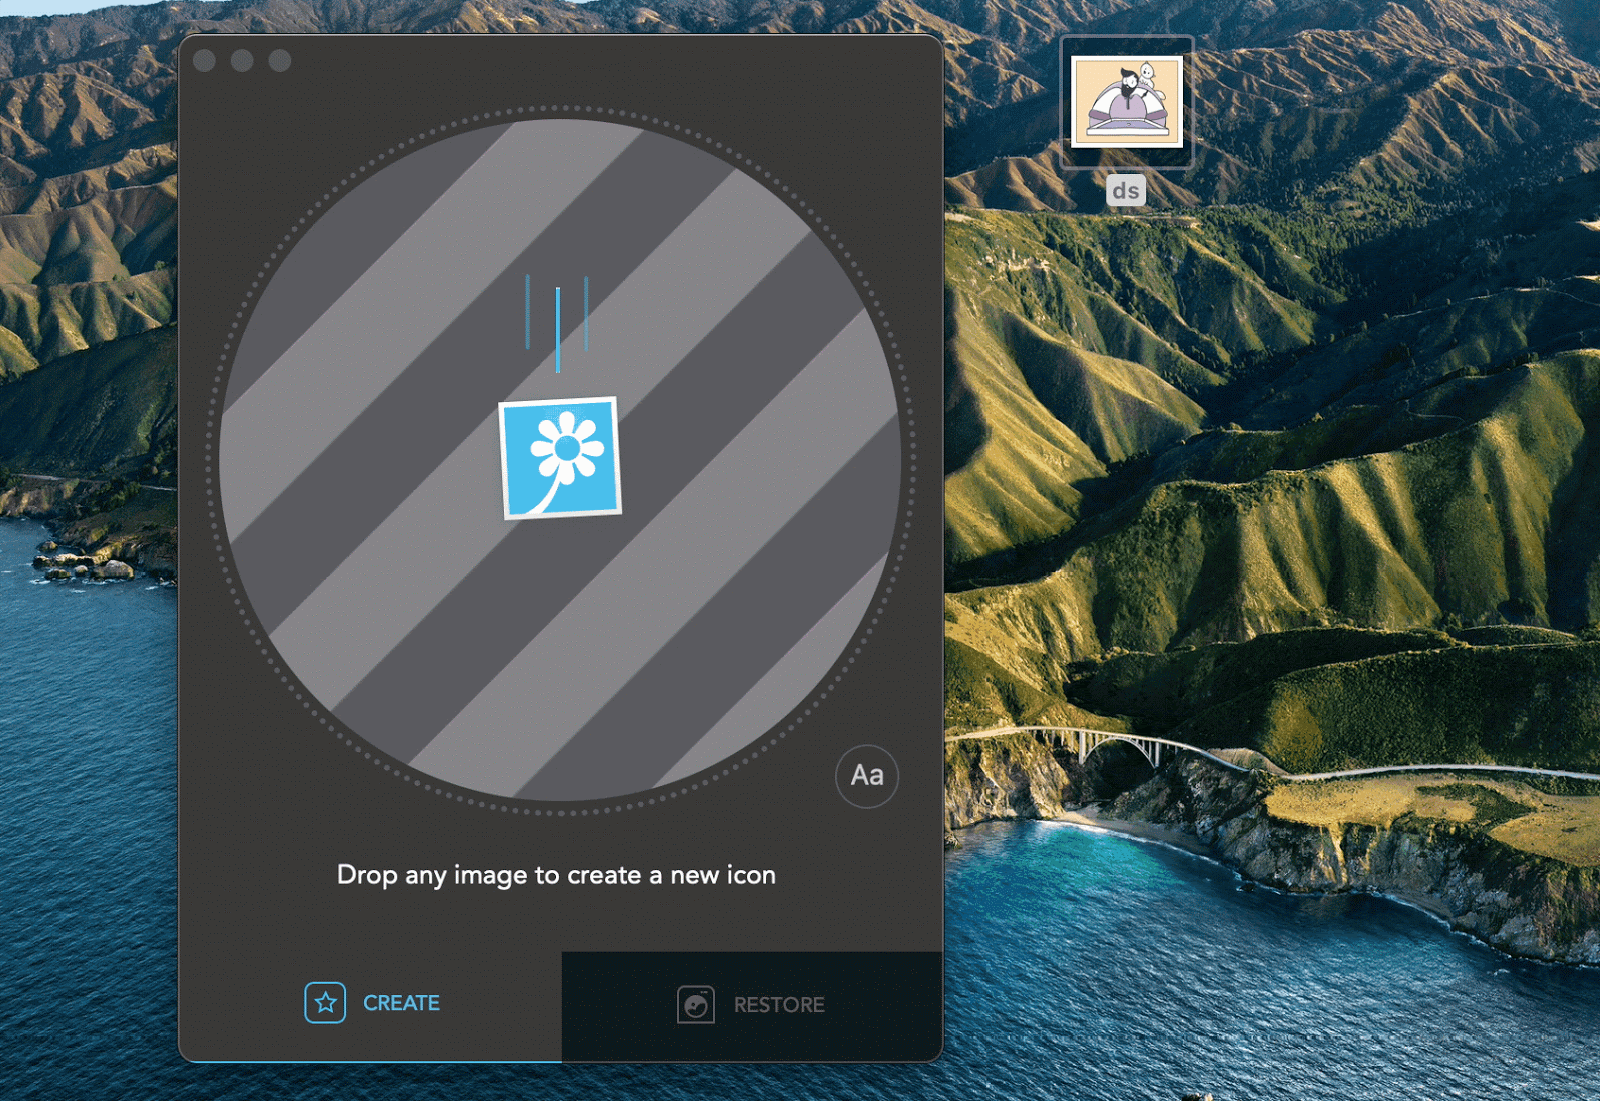 Chuyển đổi hình ảnh thành biểu tượng với ứng dụng Image2Icon